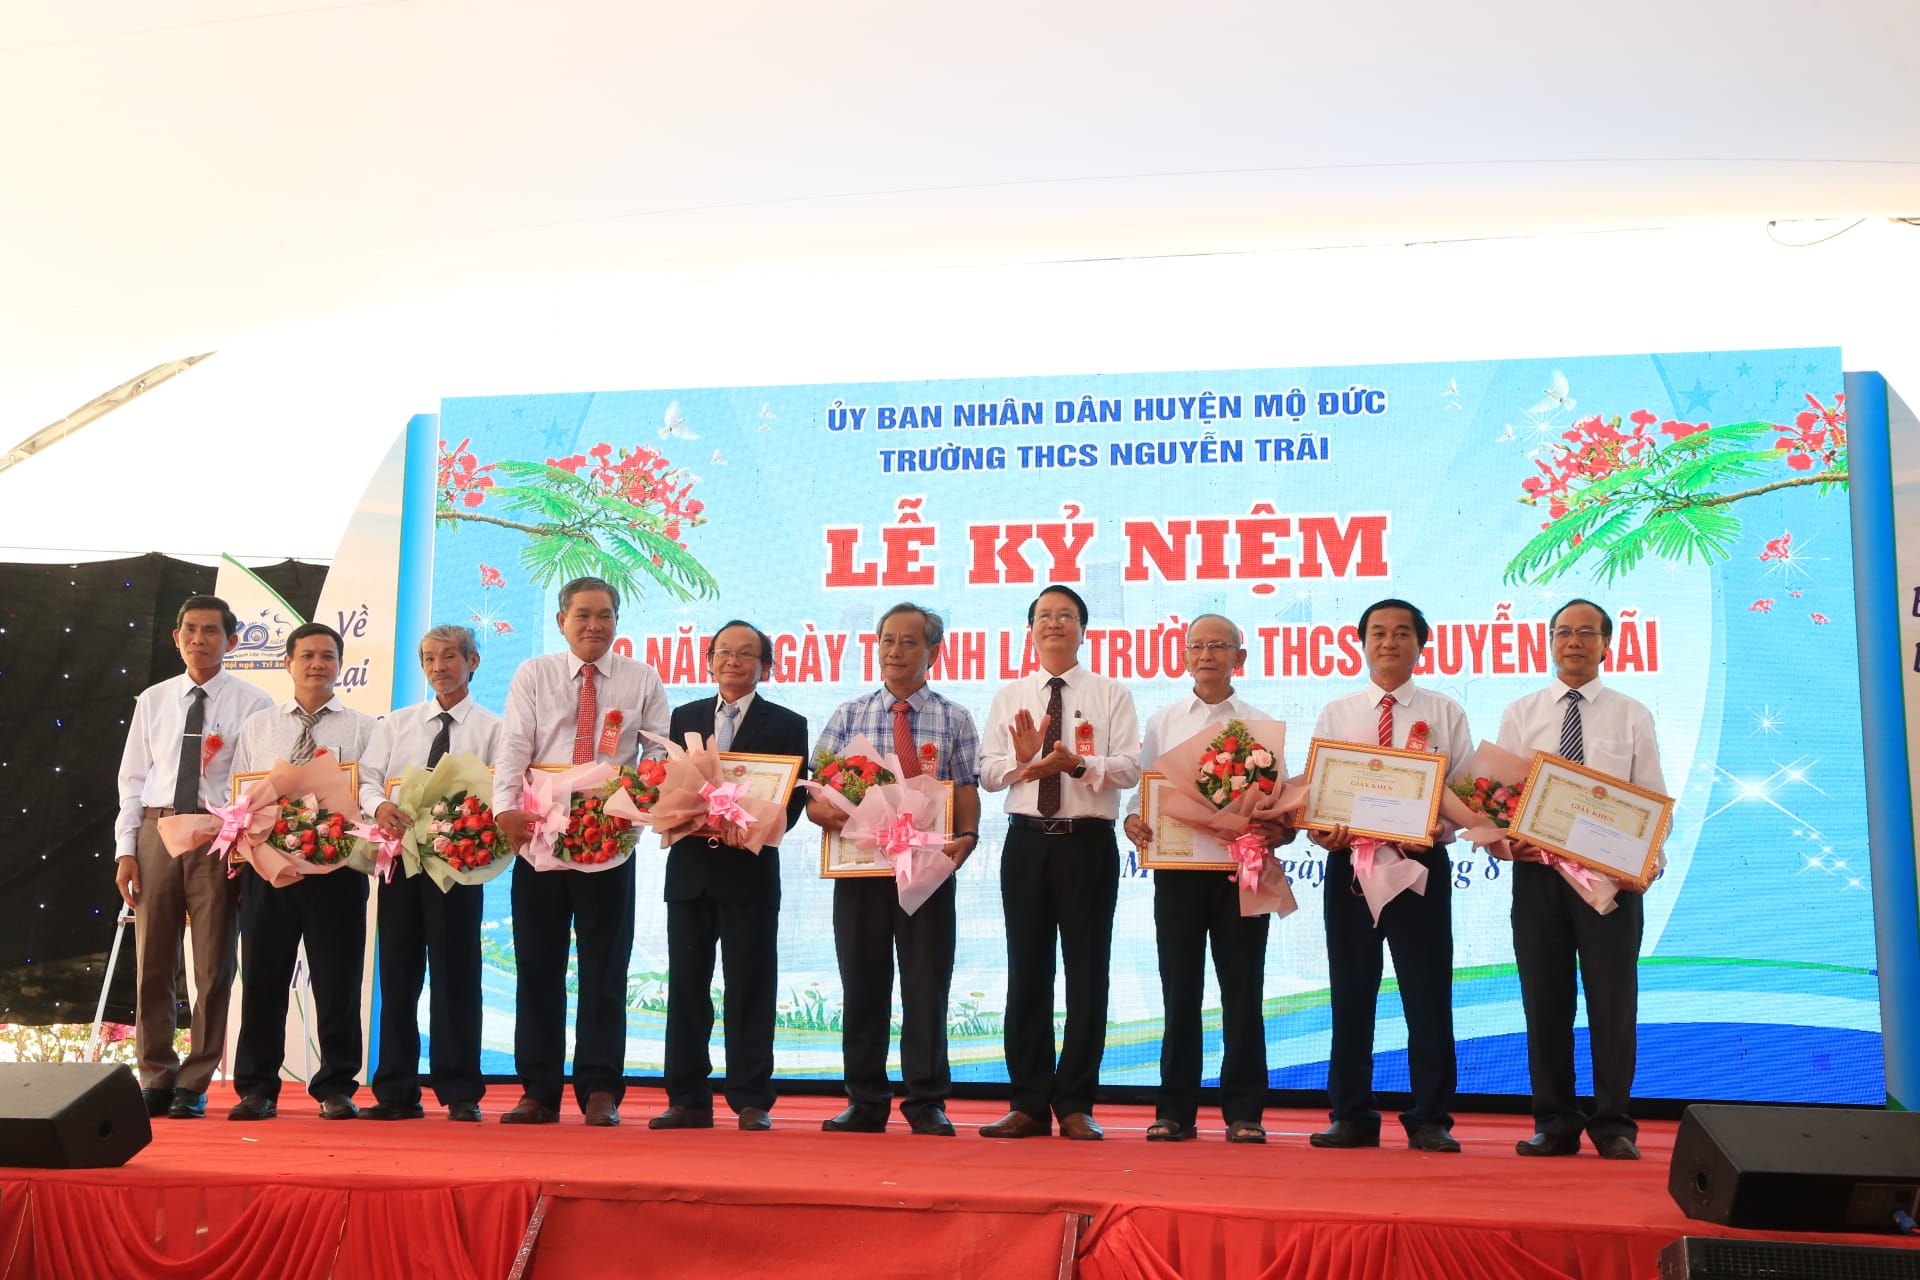 Trường THCS Nguyễn Trãi tổ chức lễ kỉ niệm 30 năm thành lập trường